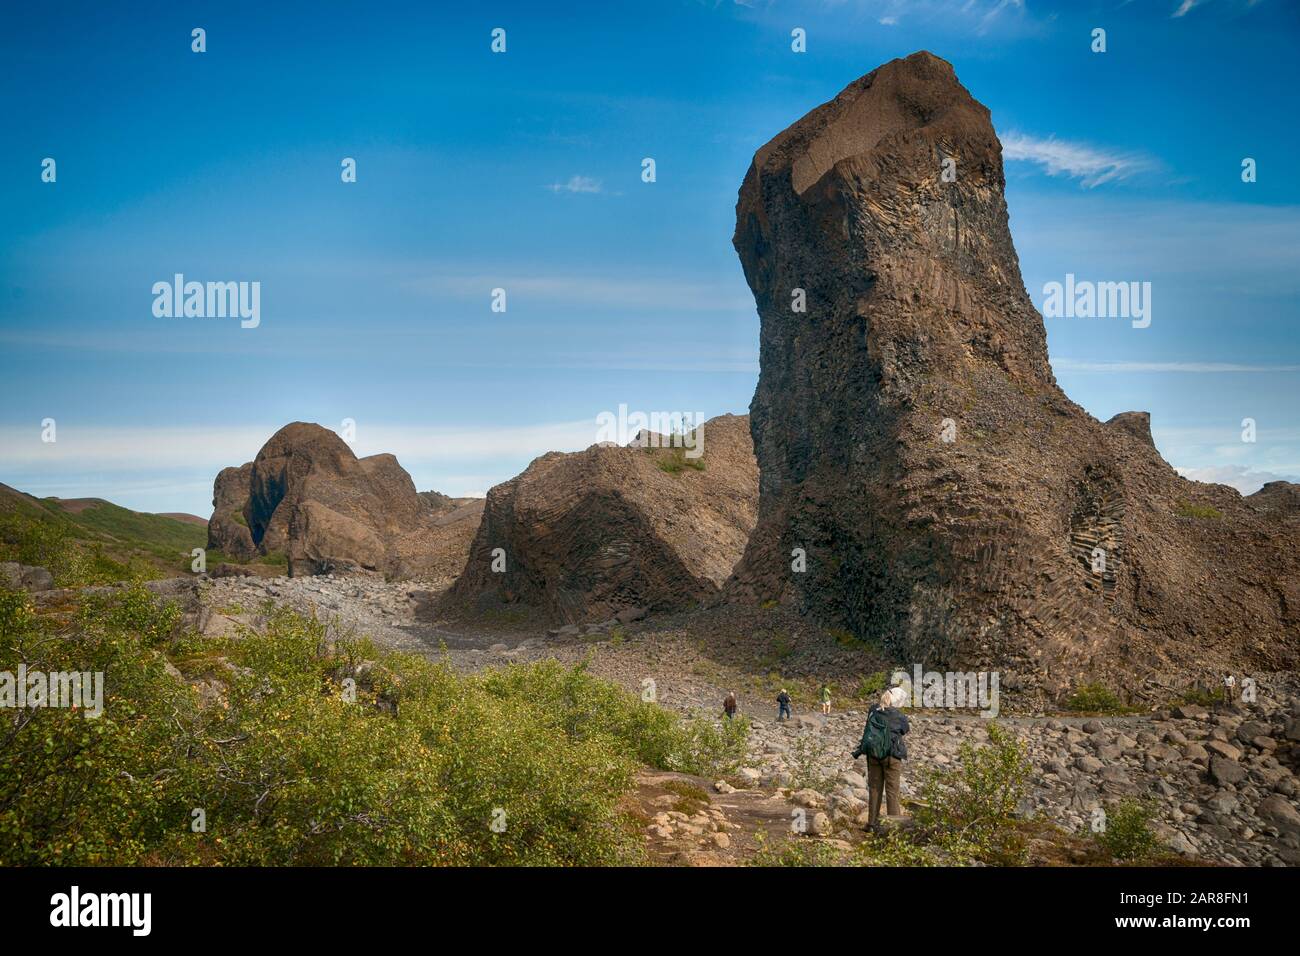 Seltsame unheimliche Gesichter in den Felsen in Lavagesteinen bei Hijodaklettar, Island Stockfoto